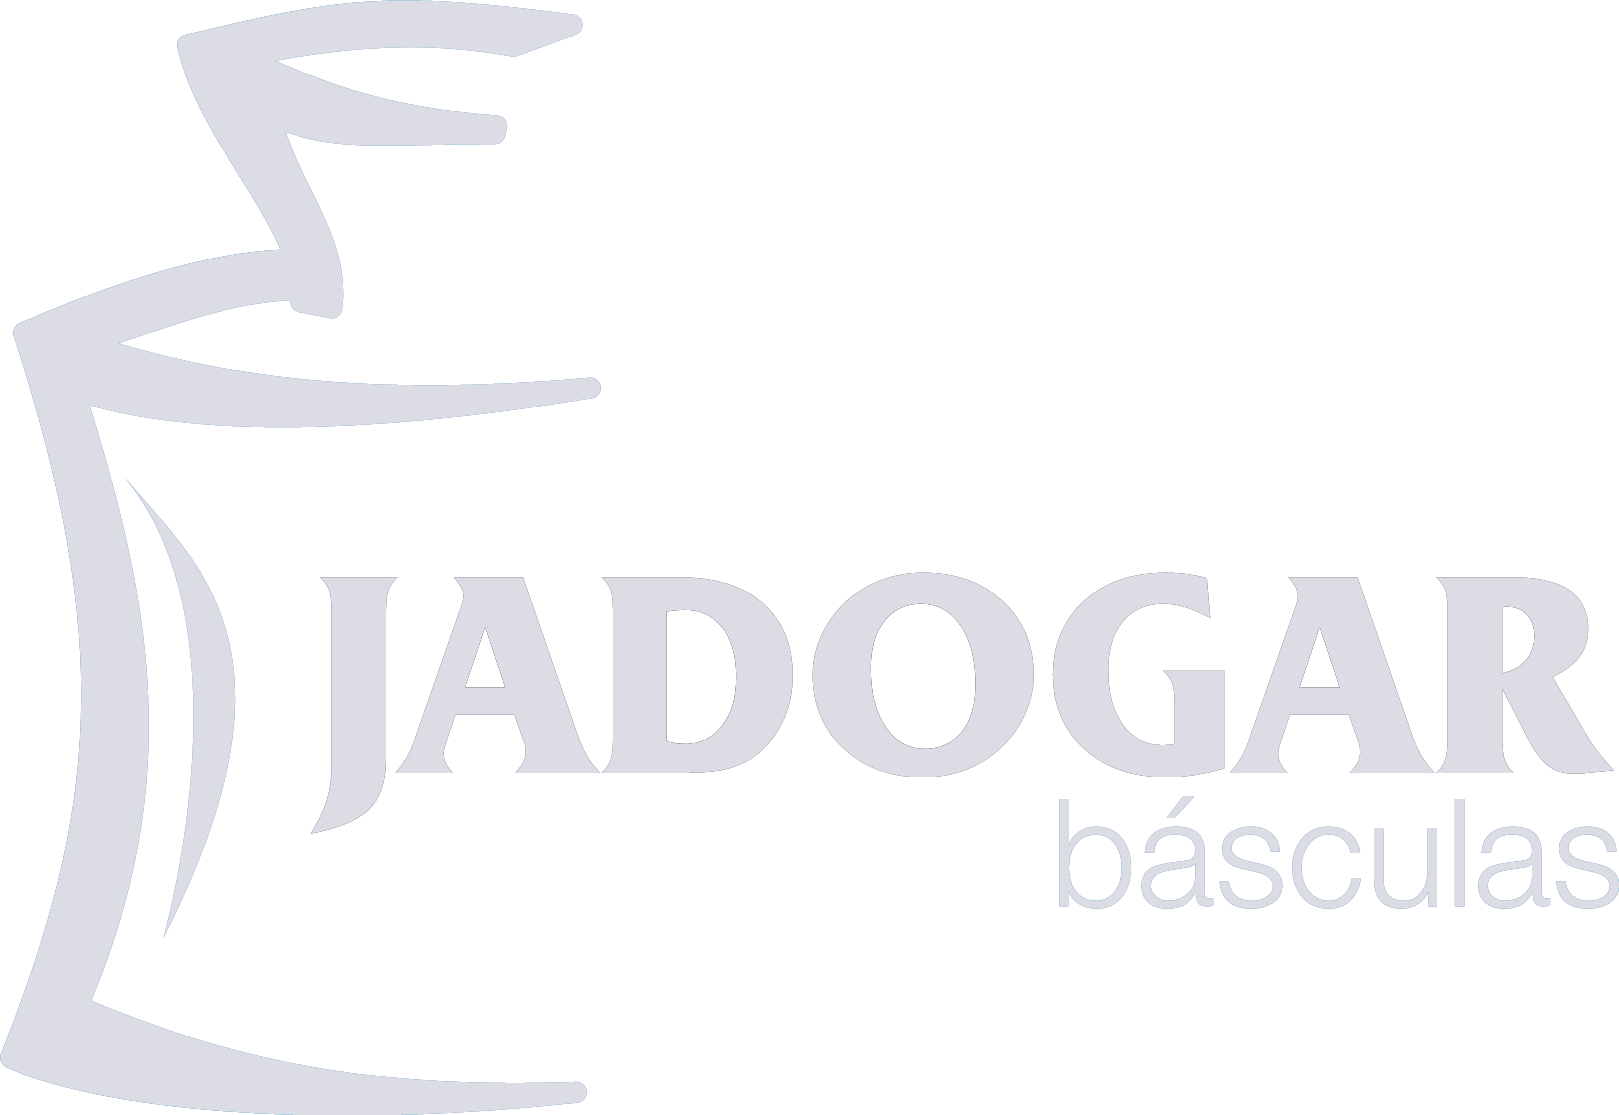 Jadogar